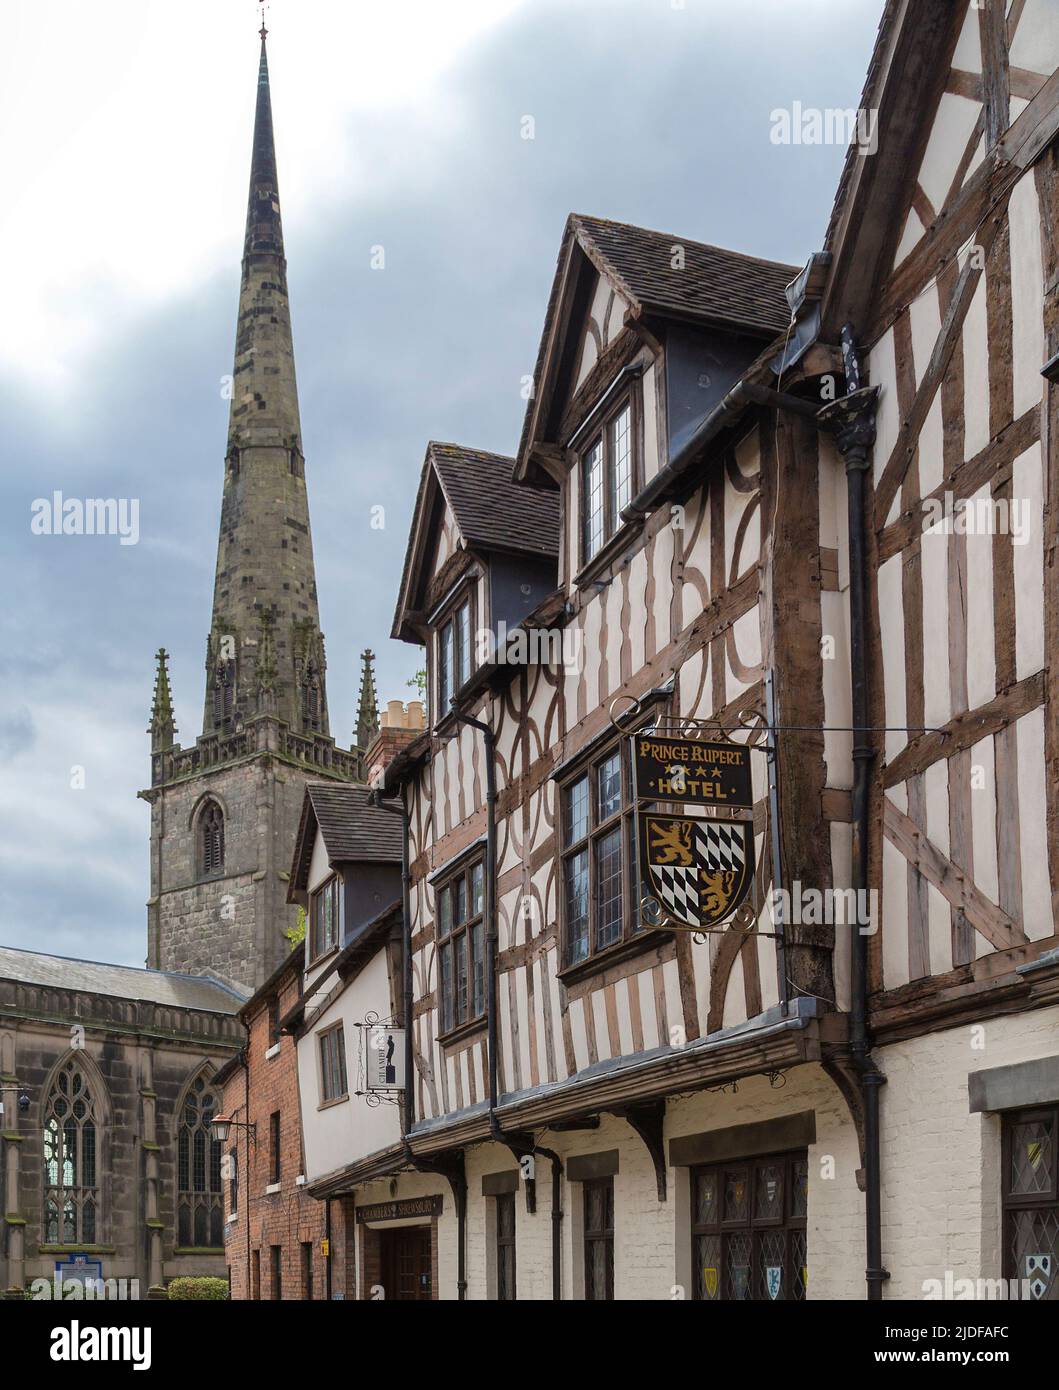 La ville marchande médiévale de Shrewsbury, en Angleterre. Avec l'architecture Tudor de l'hôtel Prince Rupert et la flèche de l'église Saint-Alkmunds. Banque D'Images